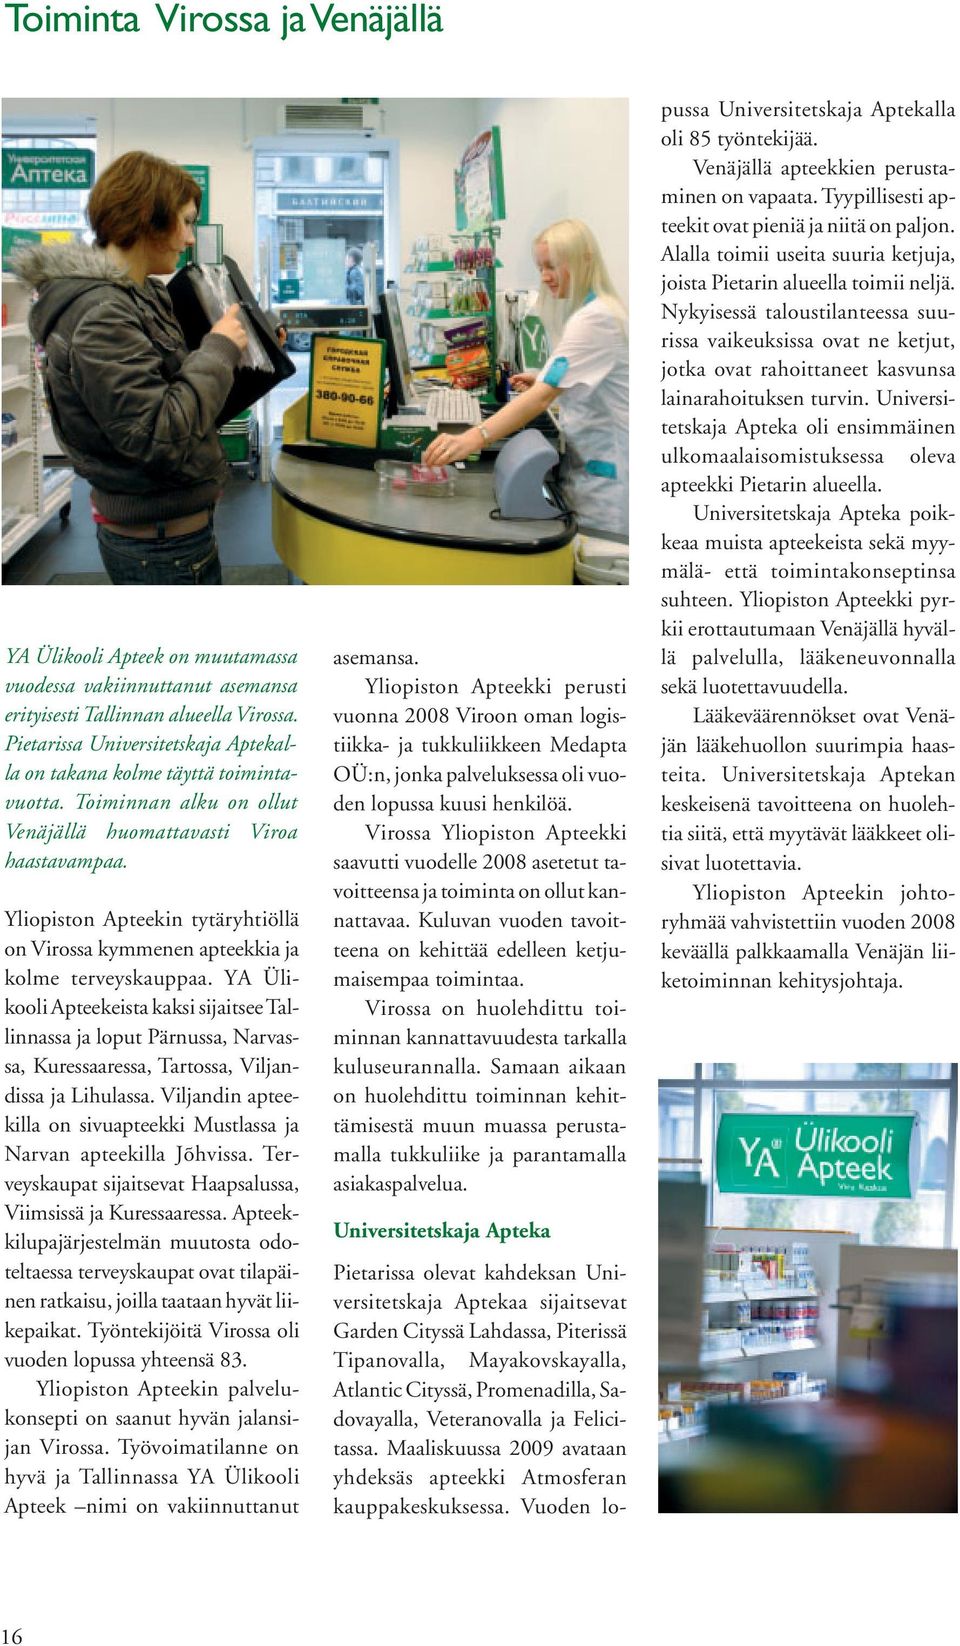 Yliopiston Apteekin tytäryhtiöllä on Virossa kymmenen apteekkia ja kolme terveyskauppaa.